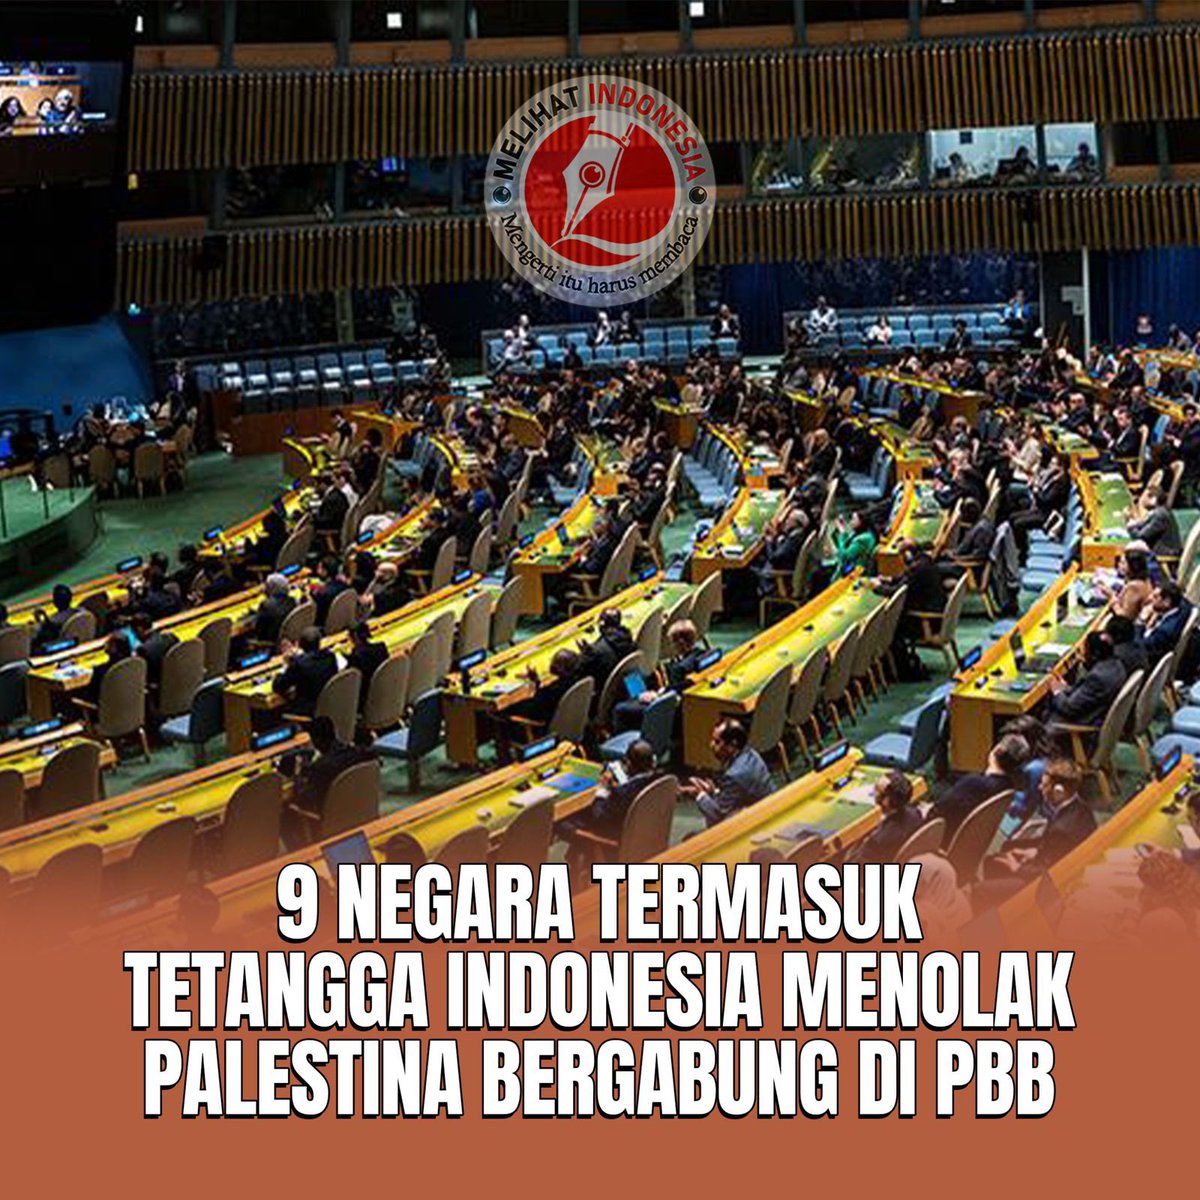 9 Negara Termasuk Tetangga Indonesia Menolak Palestina Bergabung di PBB Pada pemungutan suara di Majelis Umum Perserikatan Bangsa-bangsa (PBB) ada sebanyak 143 negara yang mendukung upaya Palestina untuk menjadi anggota penuh PBB. Namun, 9 negara termasuk tetangga Indonesia